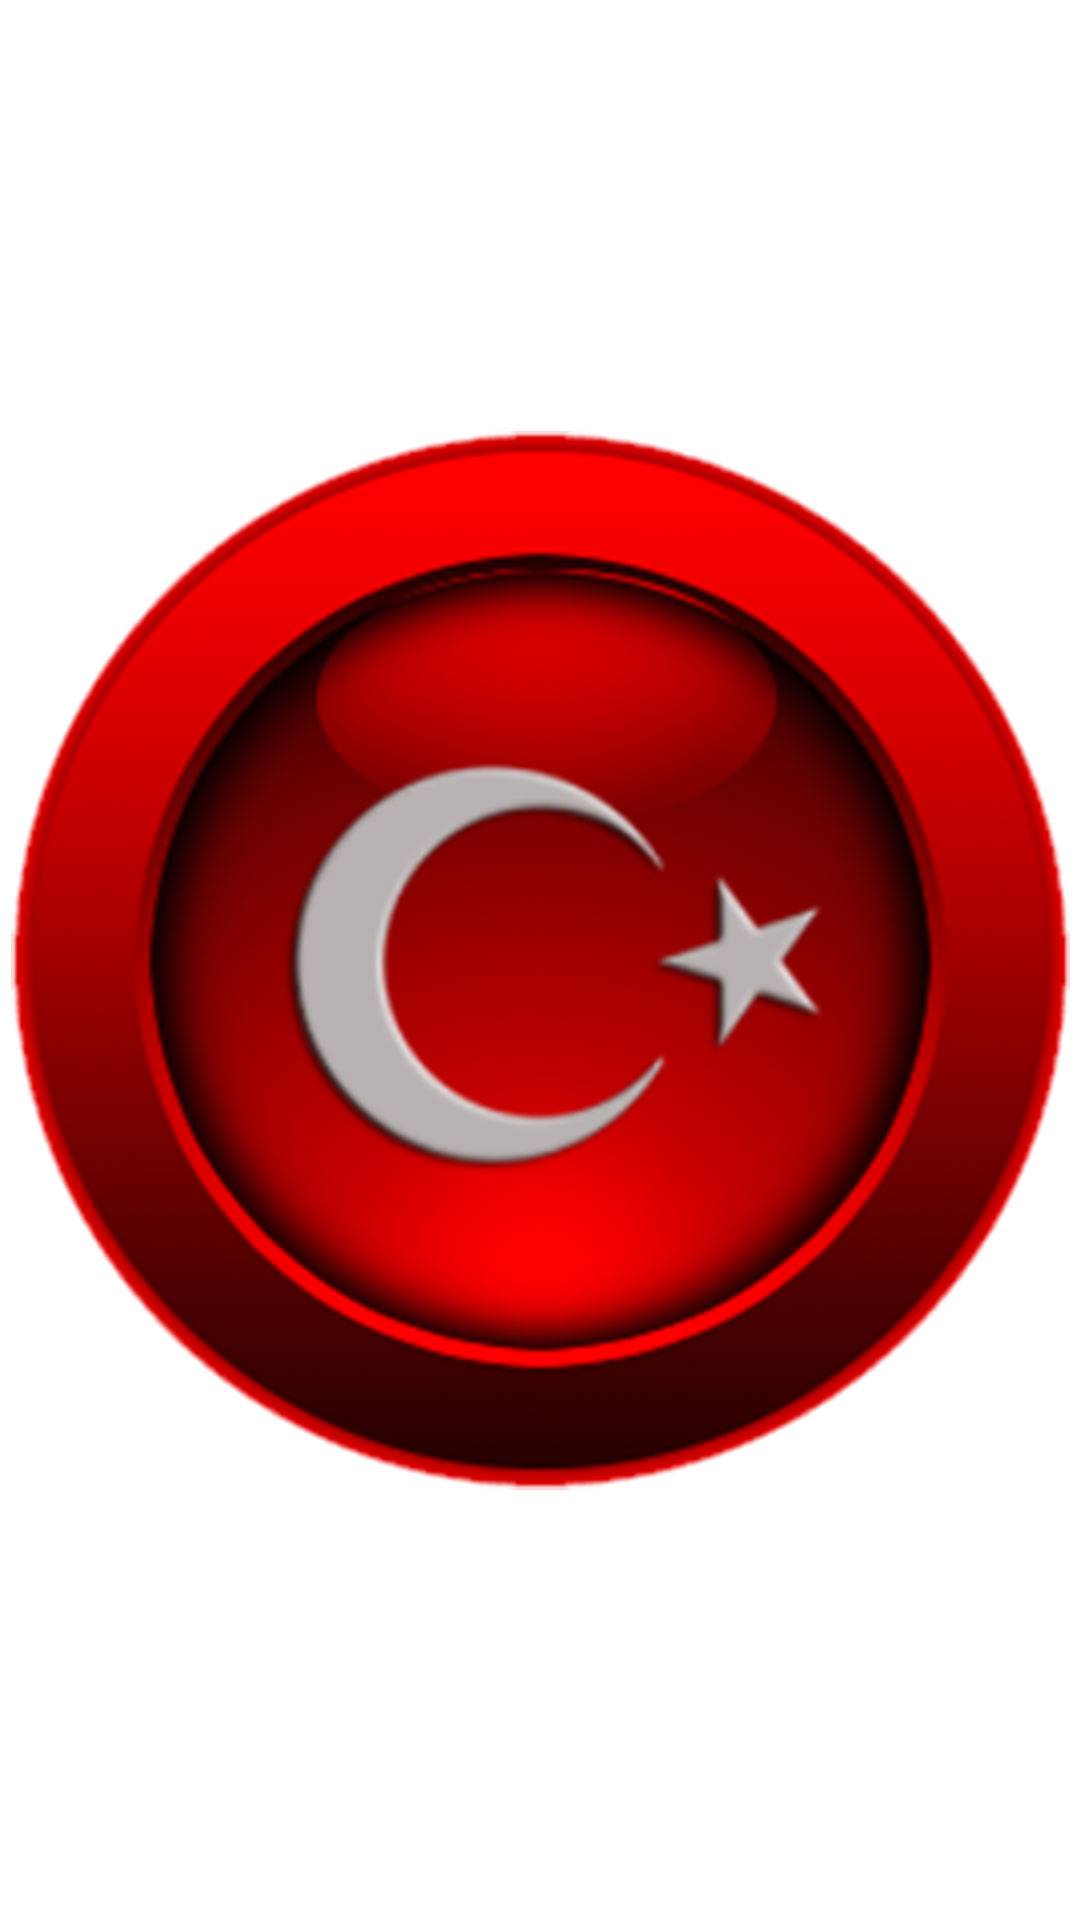 Turk bayragi cep telefonu 9